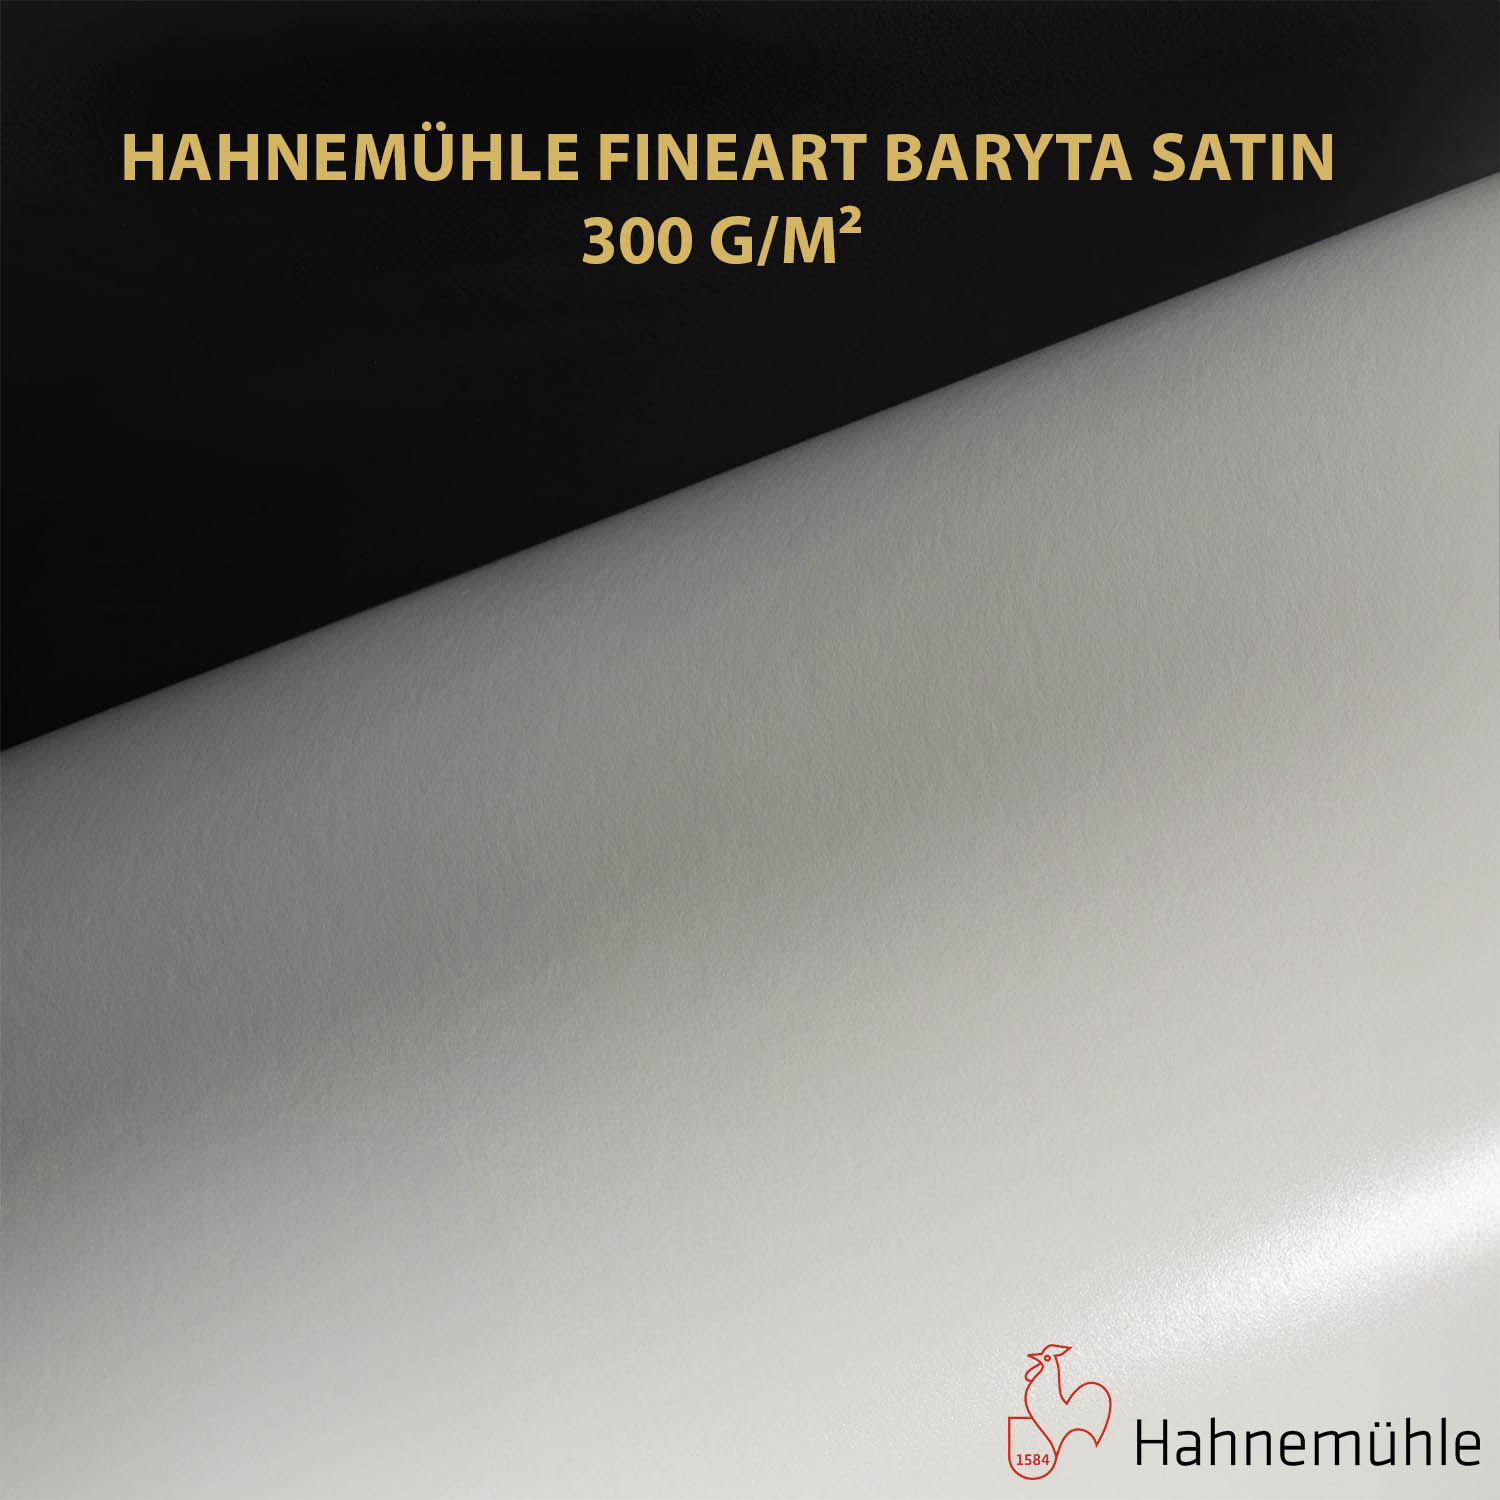 Impression et tirage Fineart pigmentaire sur papier Hahnemuhle FineArt Baryta Satin 300 à Montpellier